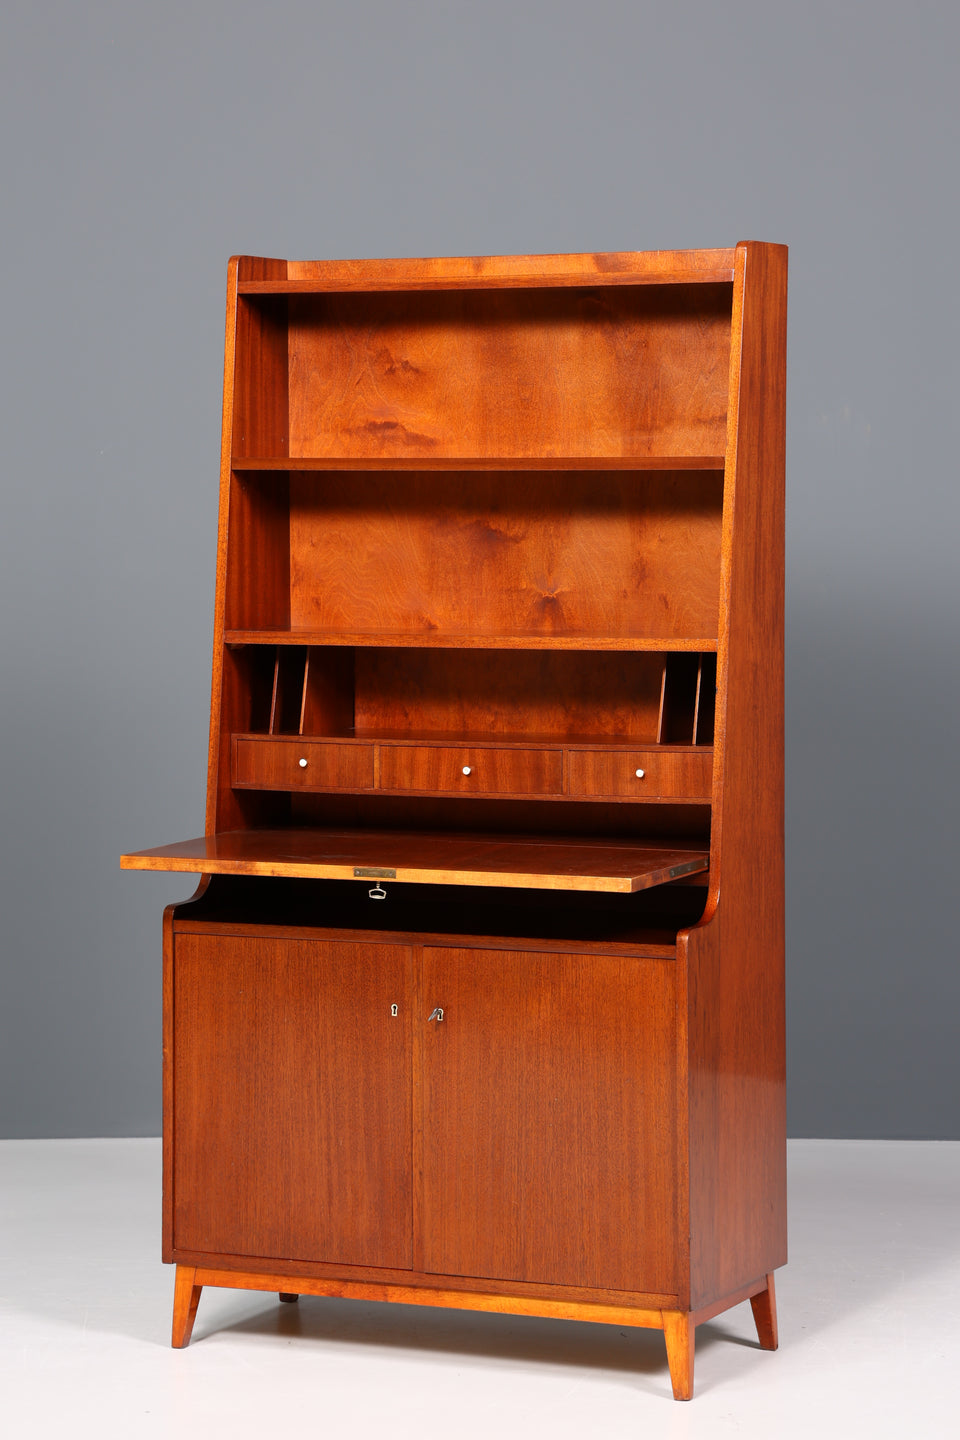 Traumhafter Mid Century Schrank Sekretär Bücherregal Vintage Highboard Retro Holz Regal 60er Jahre